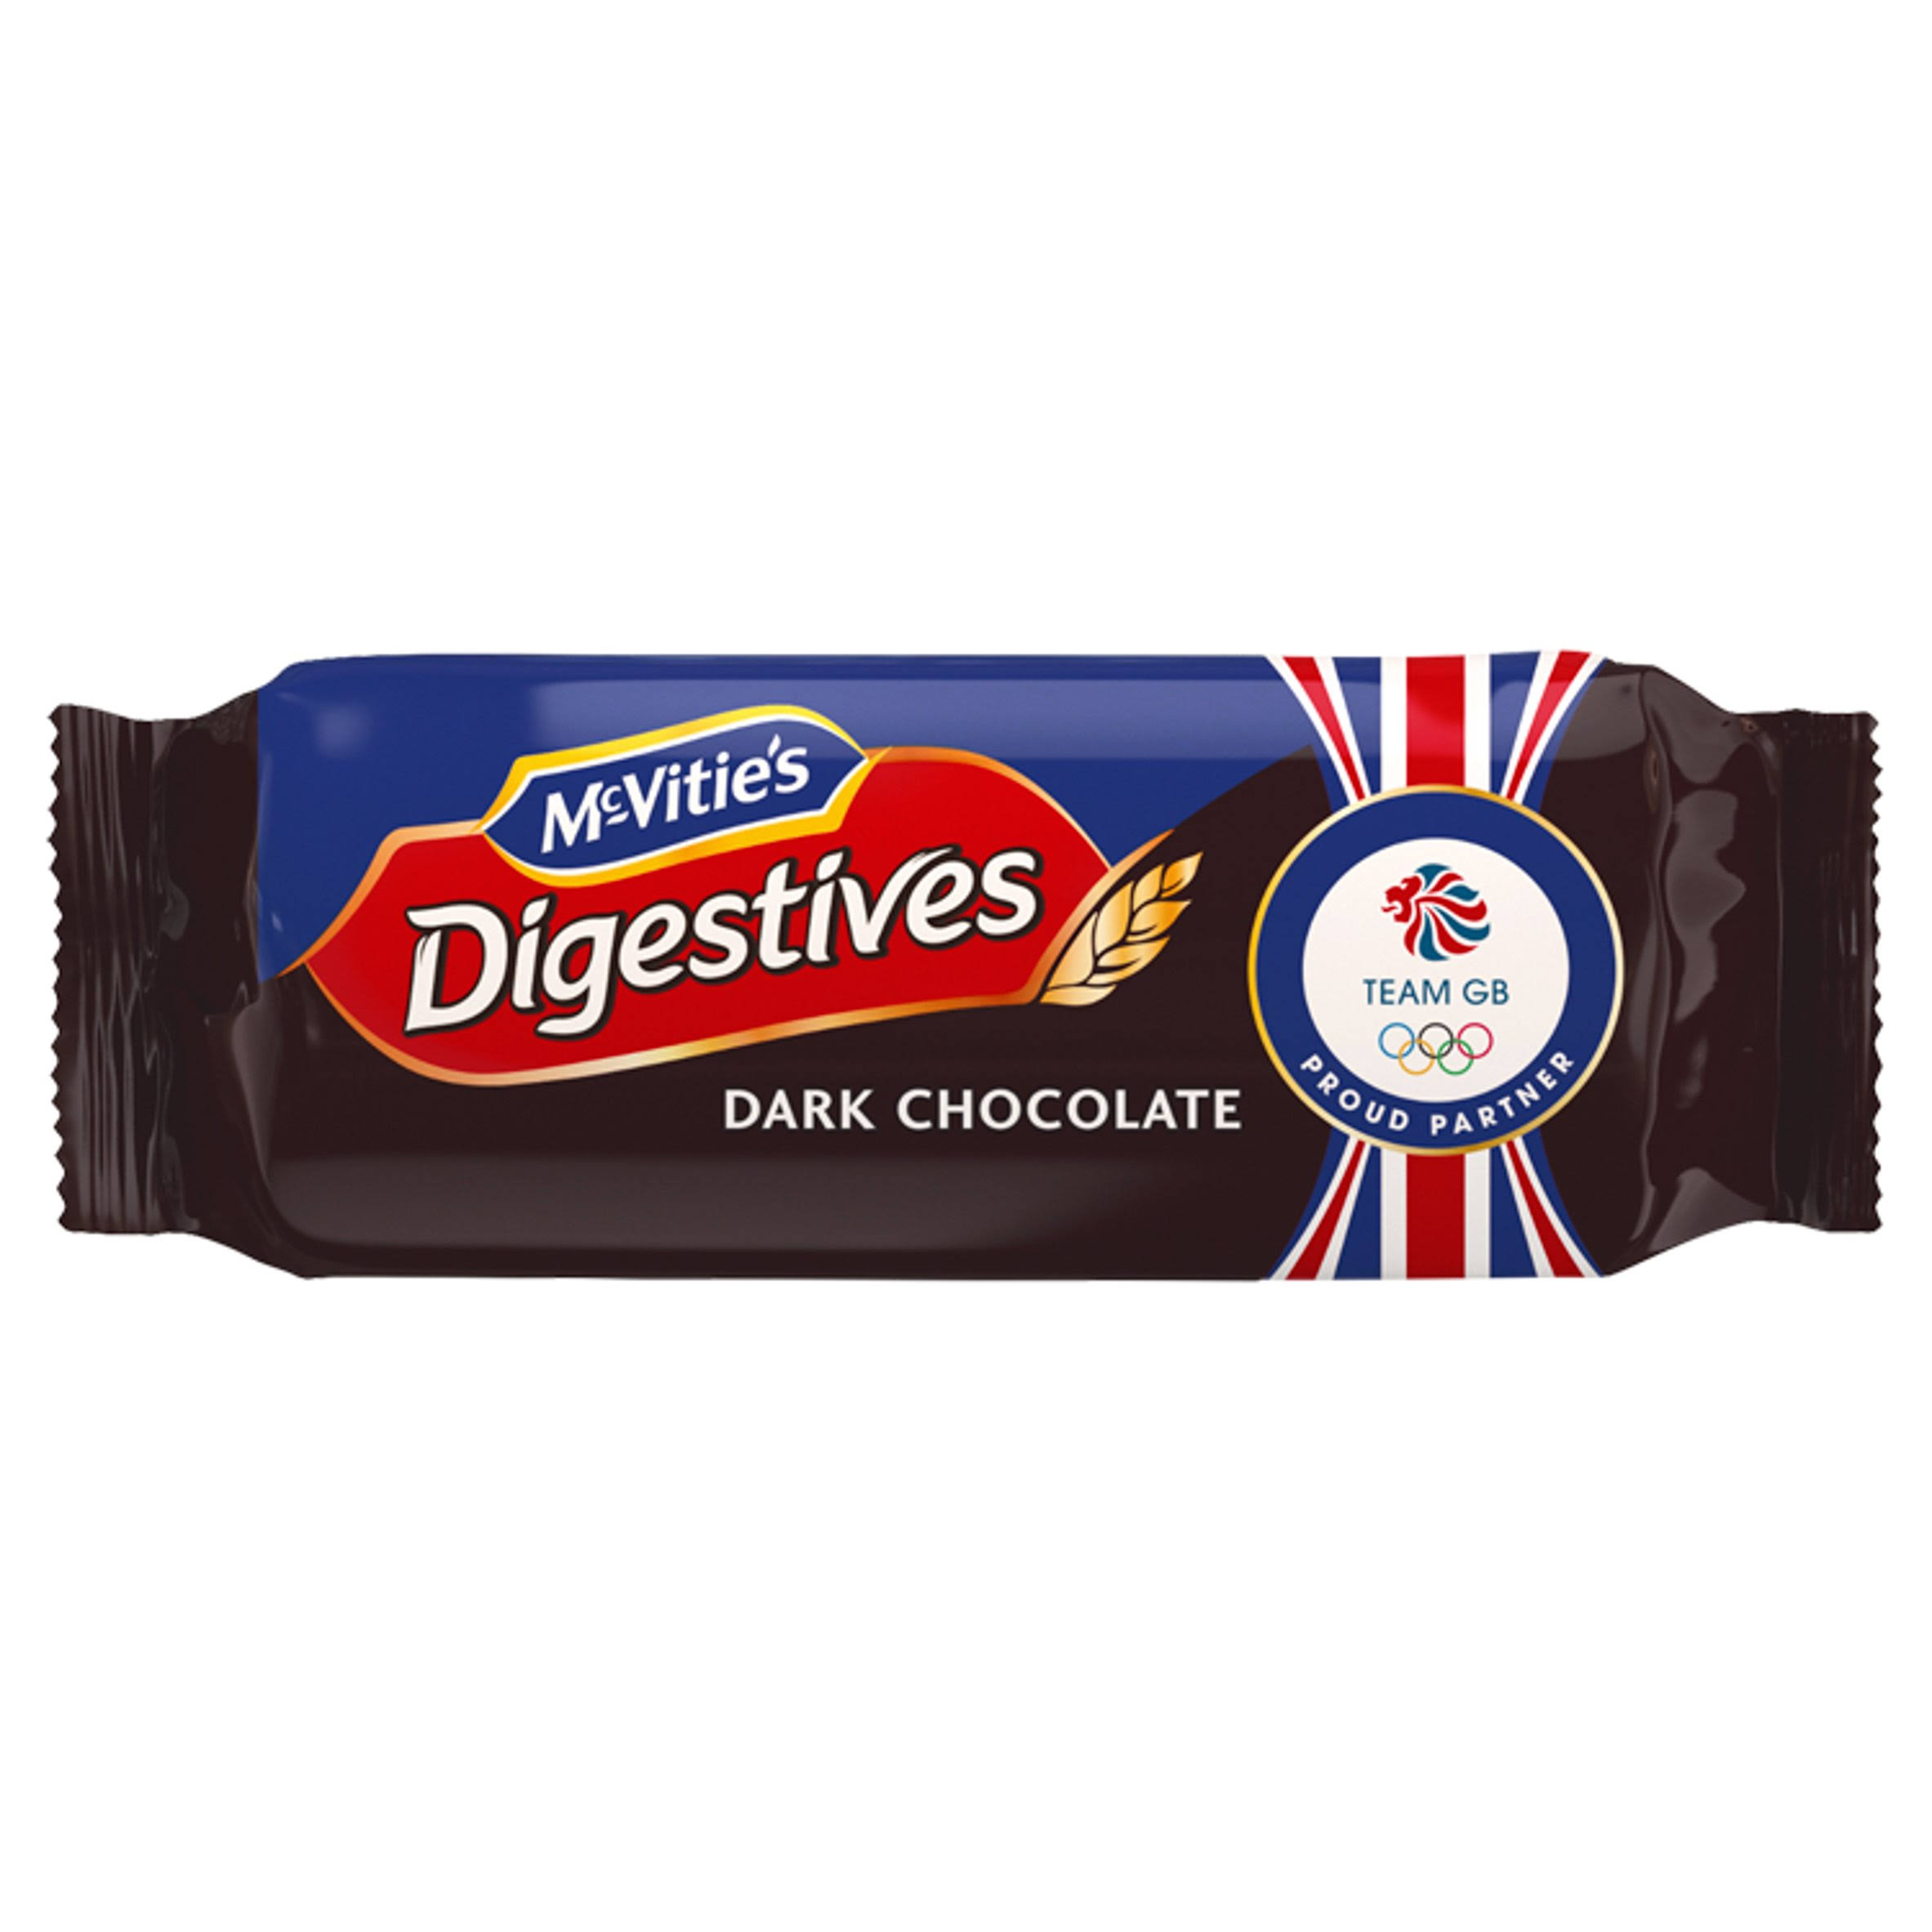 McVitie's Digestives Biscuit - Dark Chocolate, 266g